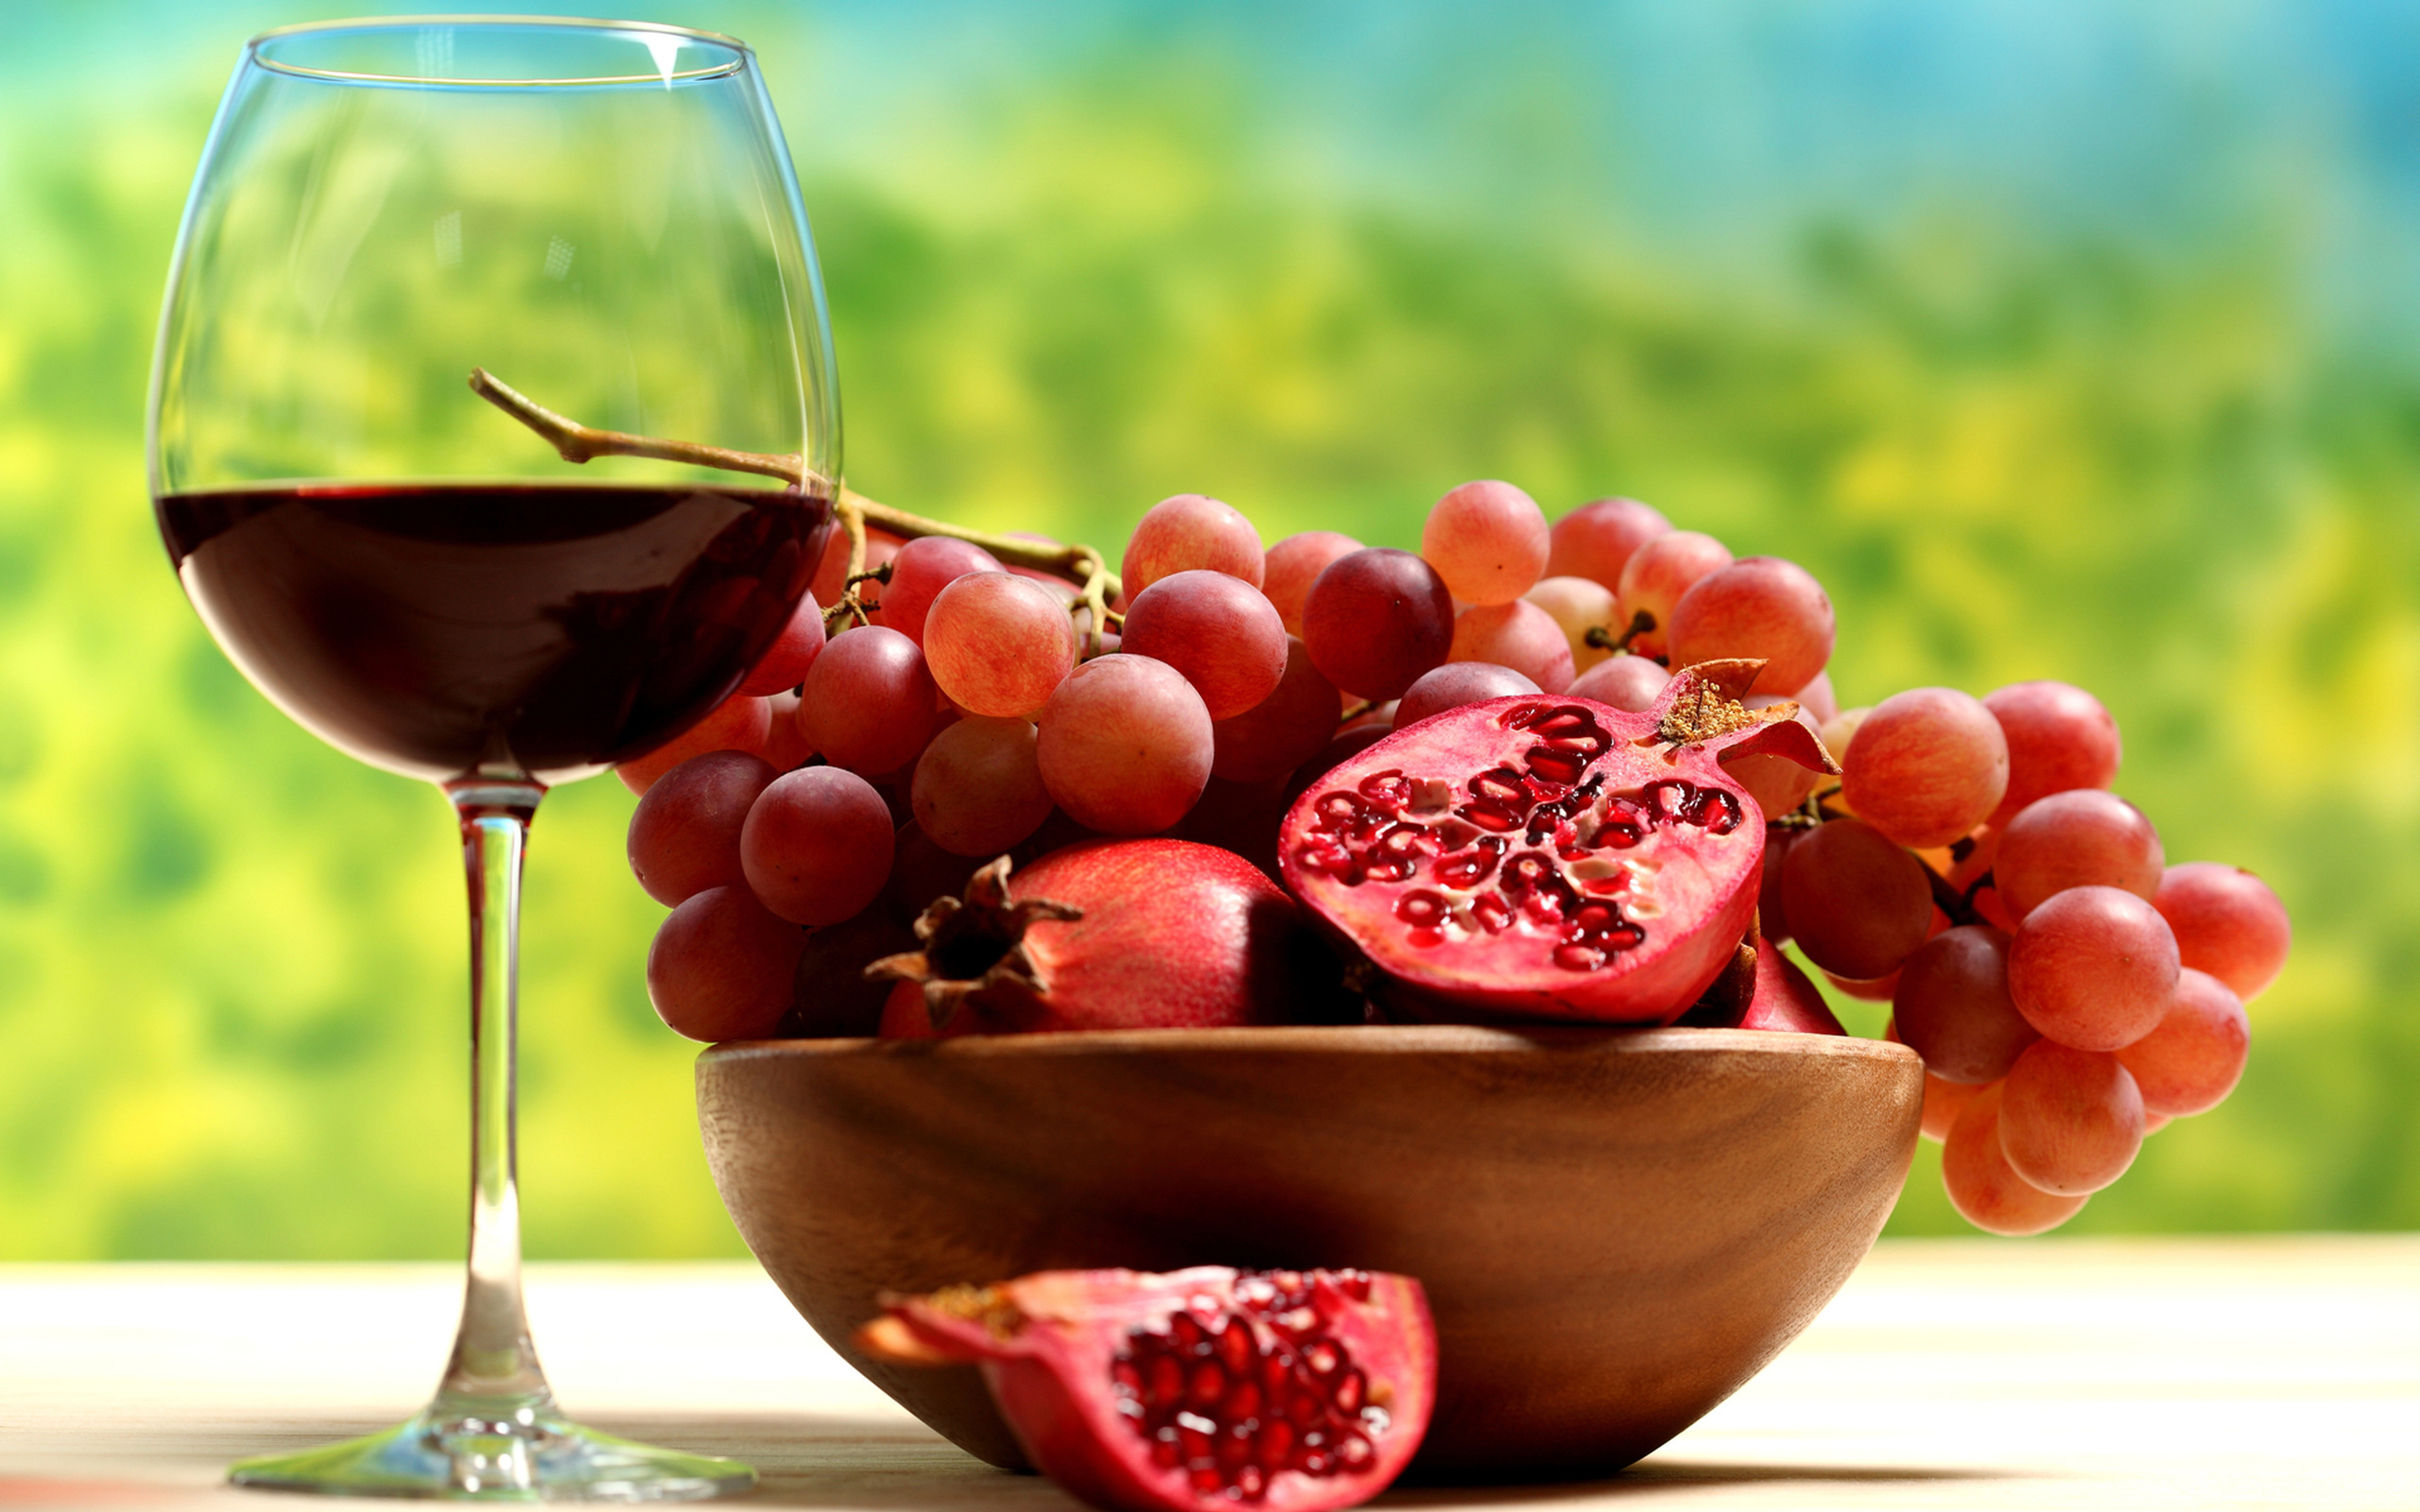 grapes, fruits, food, vine, drinks Image for desktop